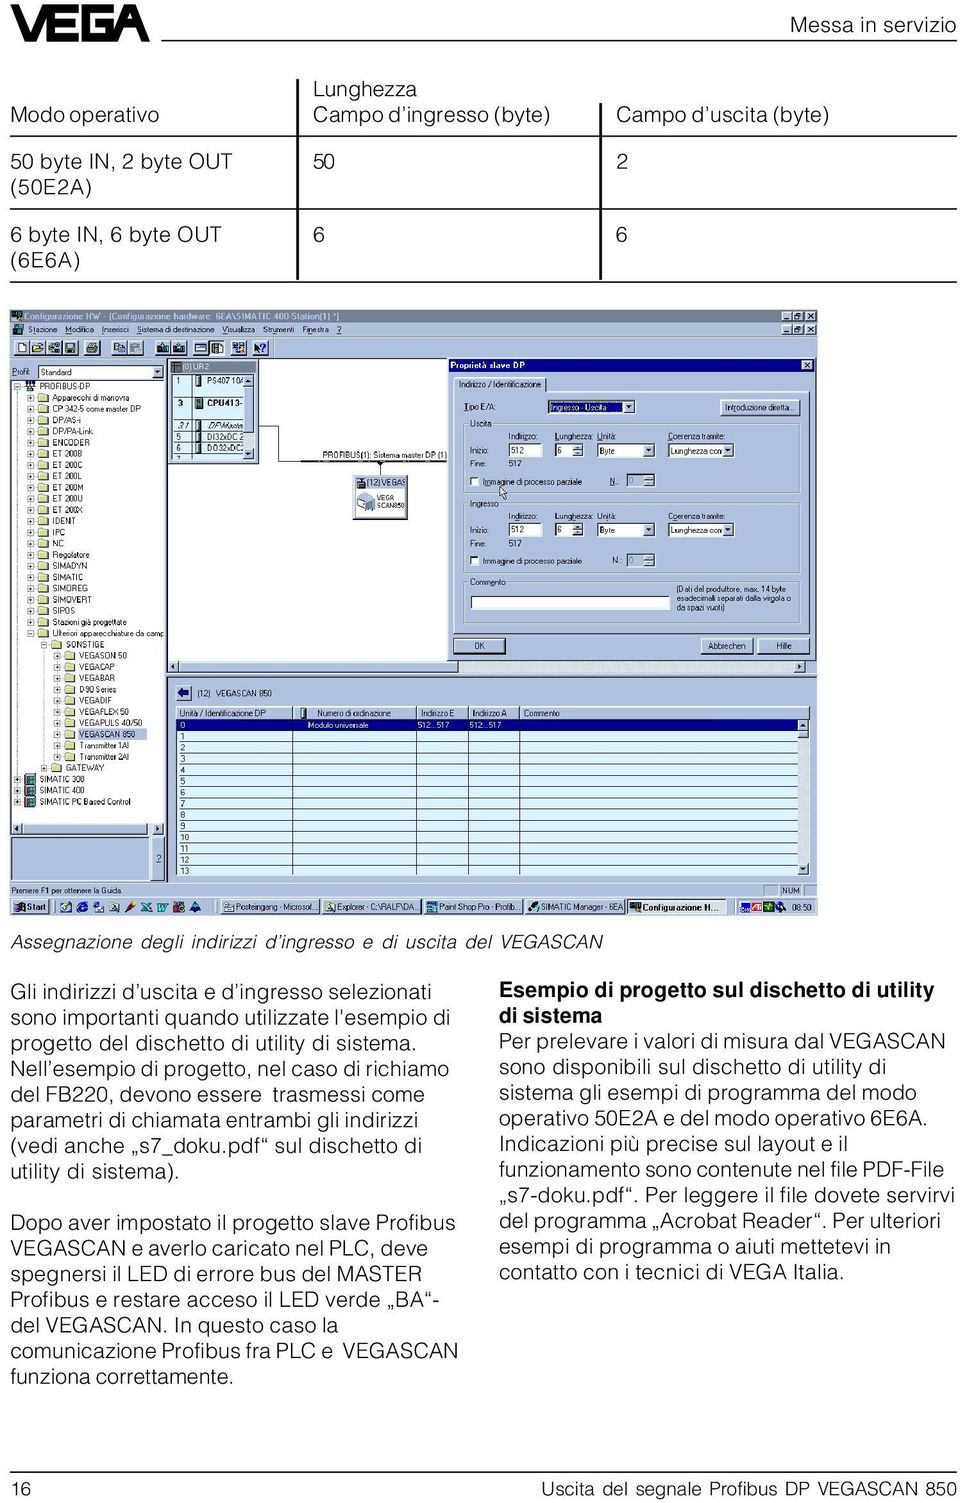 Nell esempio di progetto, nel caso di richiamo del FB220, devono essere trasmessi come parametri di chiamata entrambi gli indirizzi (vedi anche s7_doku.pdf sul dischetto di utility di sistema).